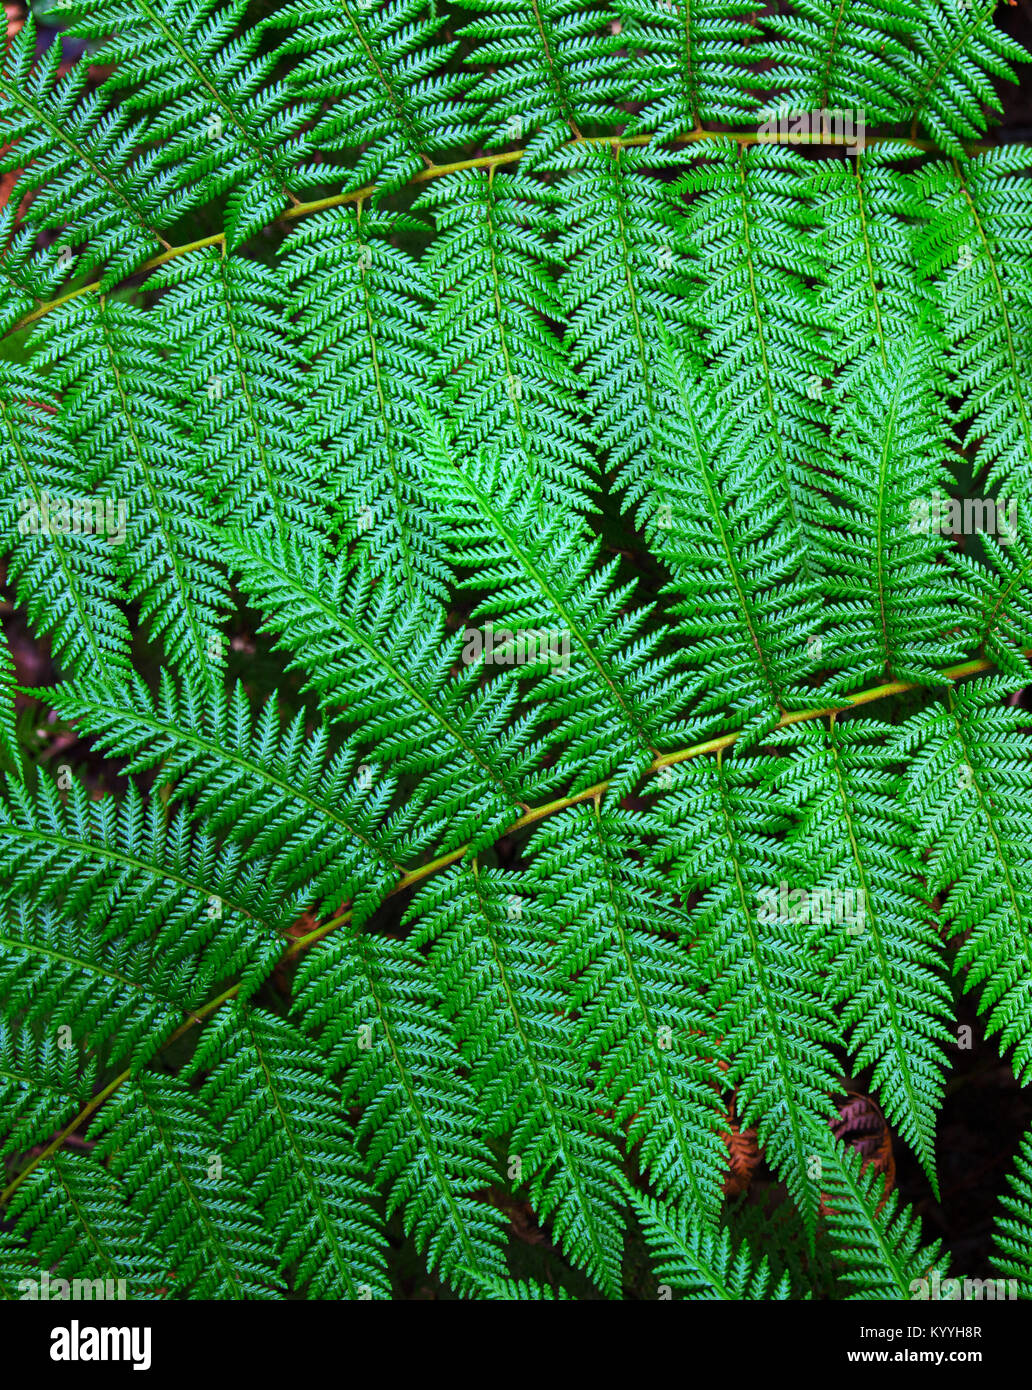 Dettaglio di una felce che cresce in una densa foresta vicino vulcano Poas in Costa Rica centrale Foto Stock